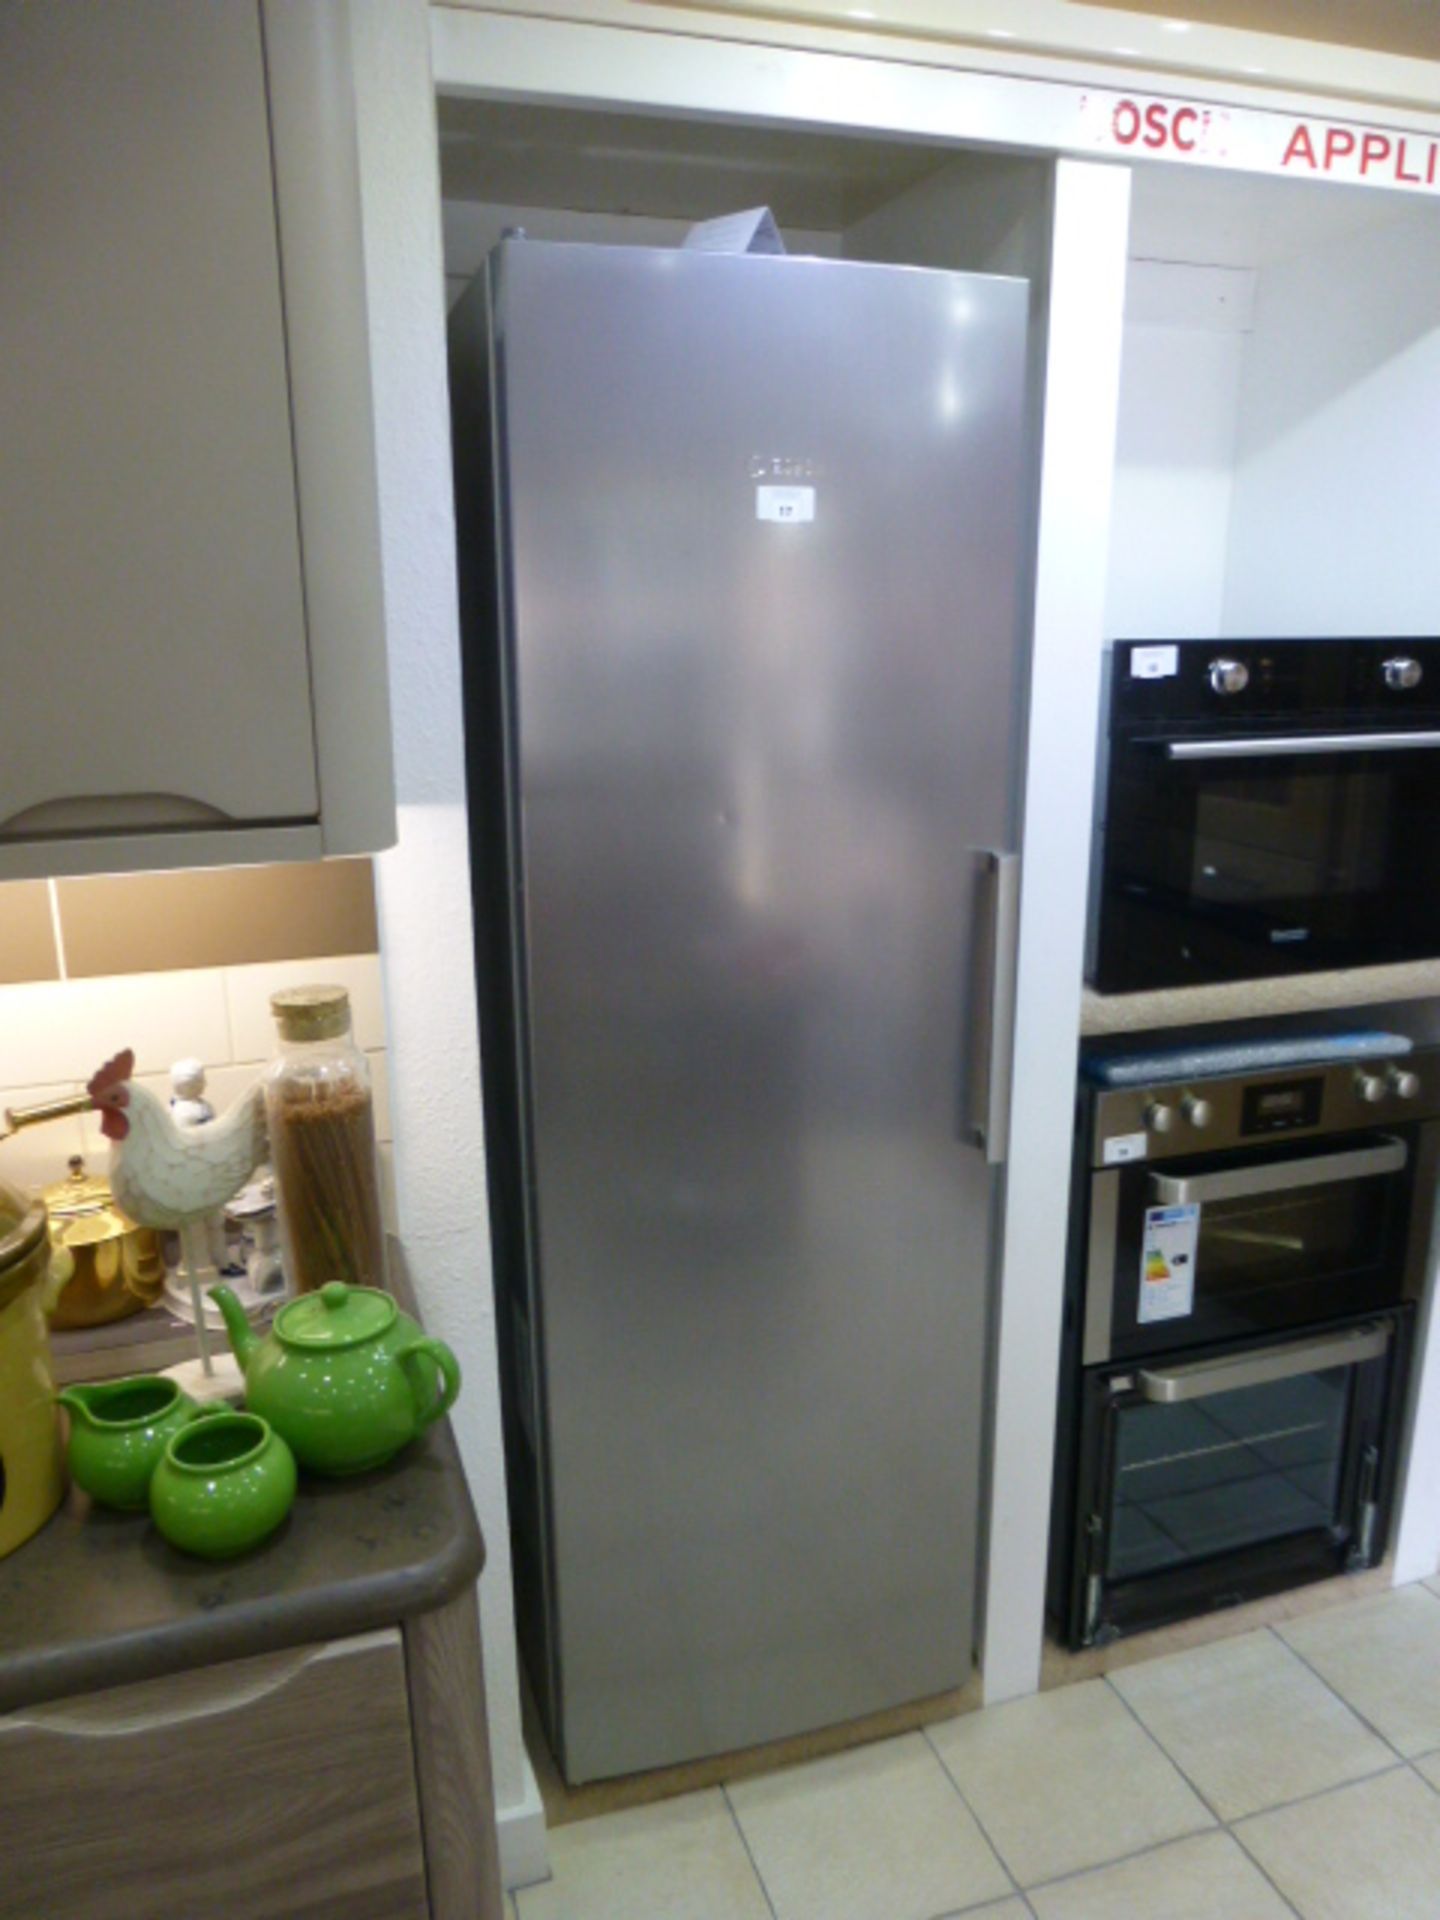 Bosch 60cm full height refrigerator model no. KSV36VL30G